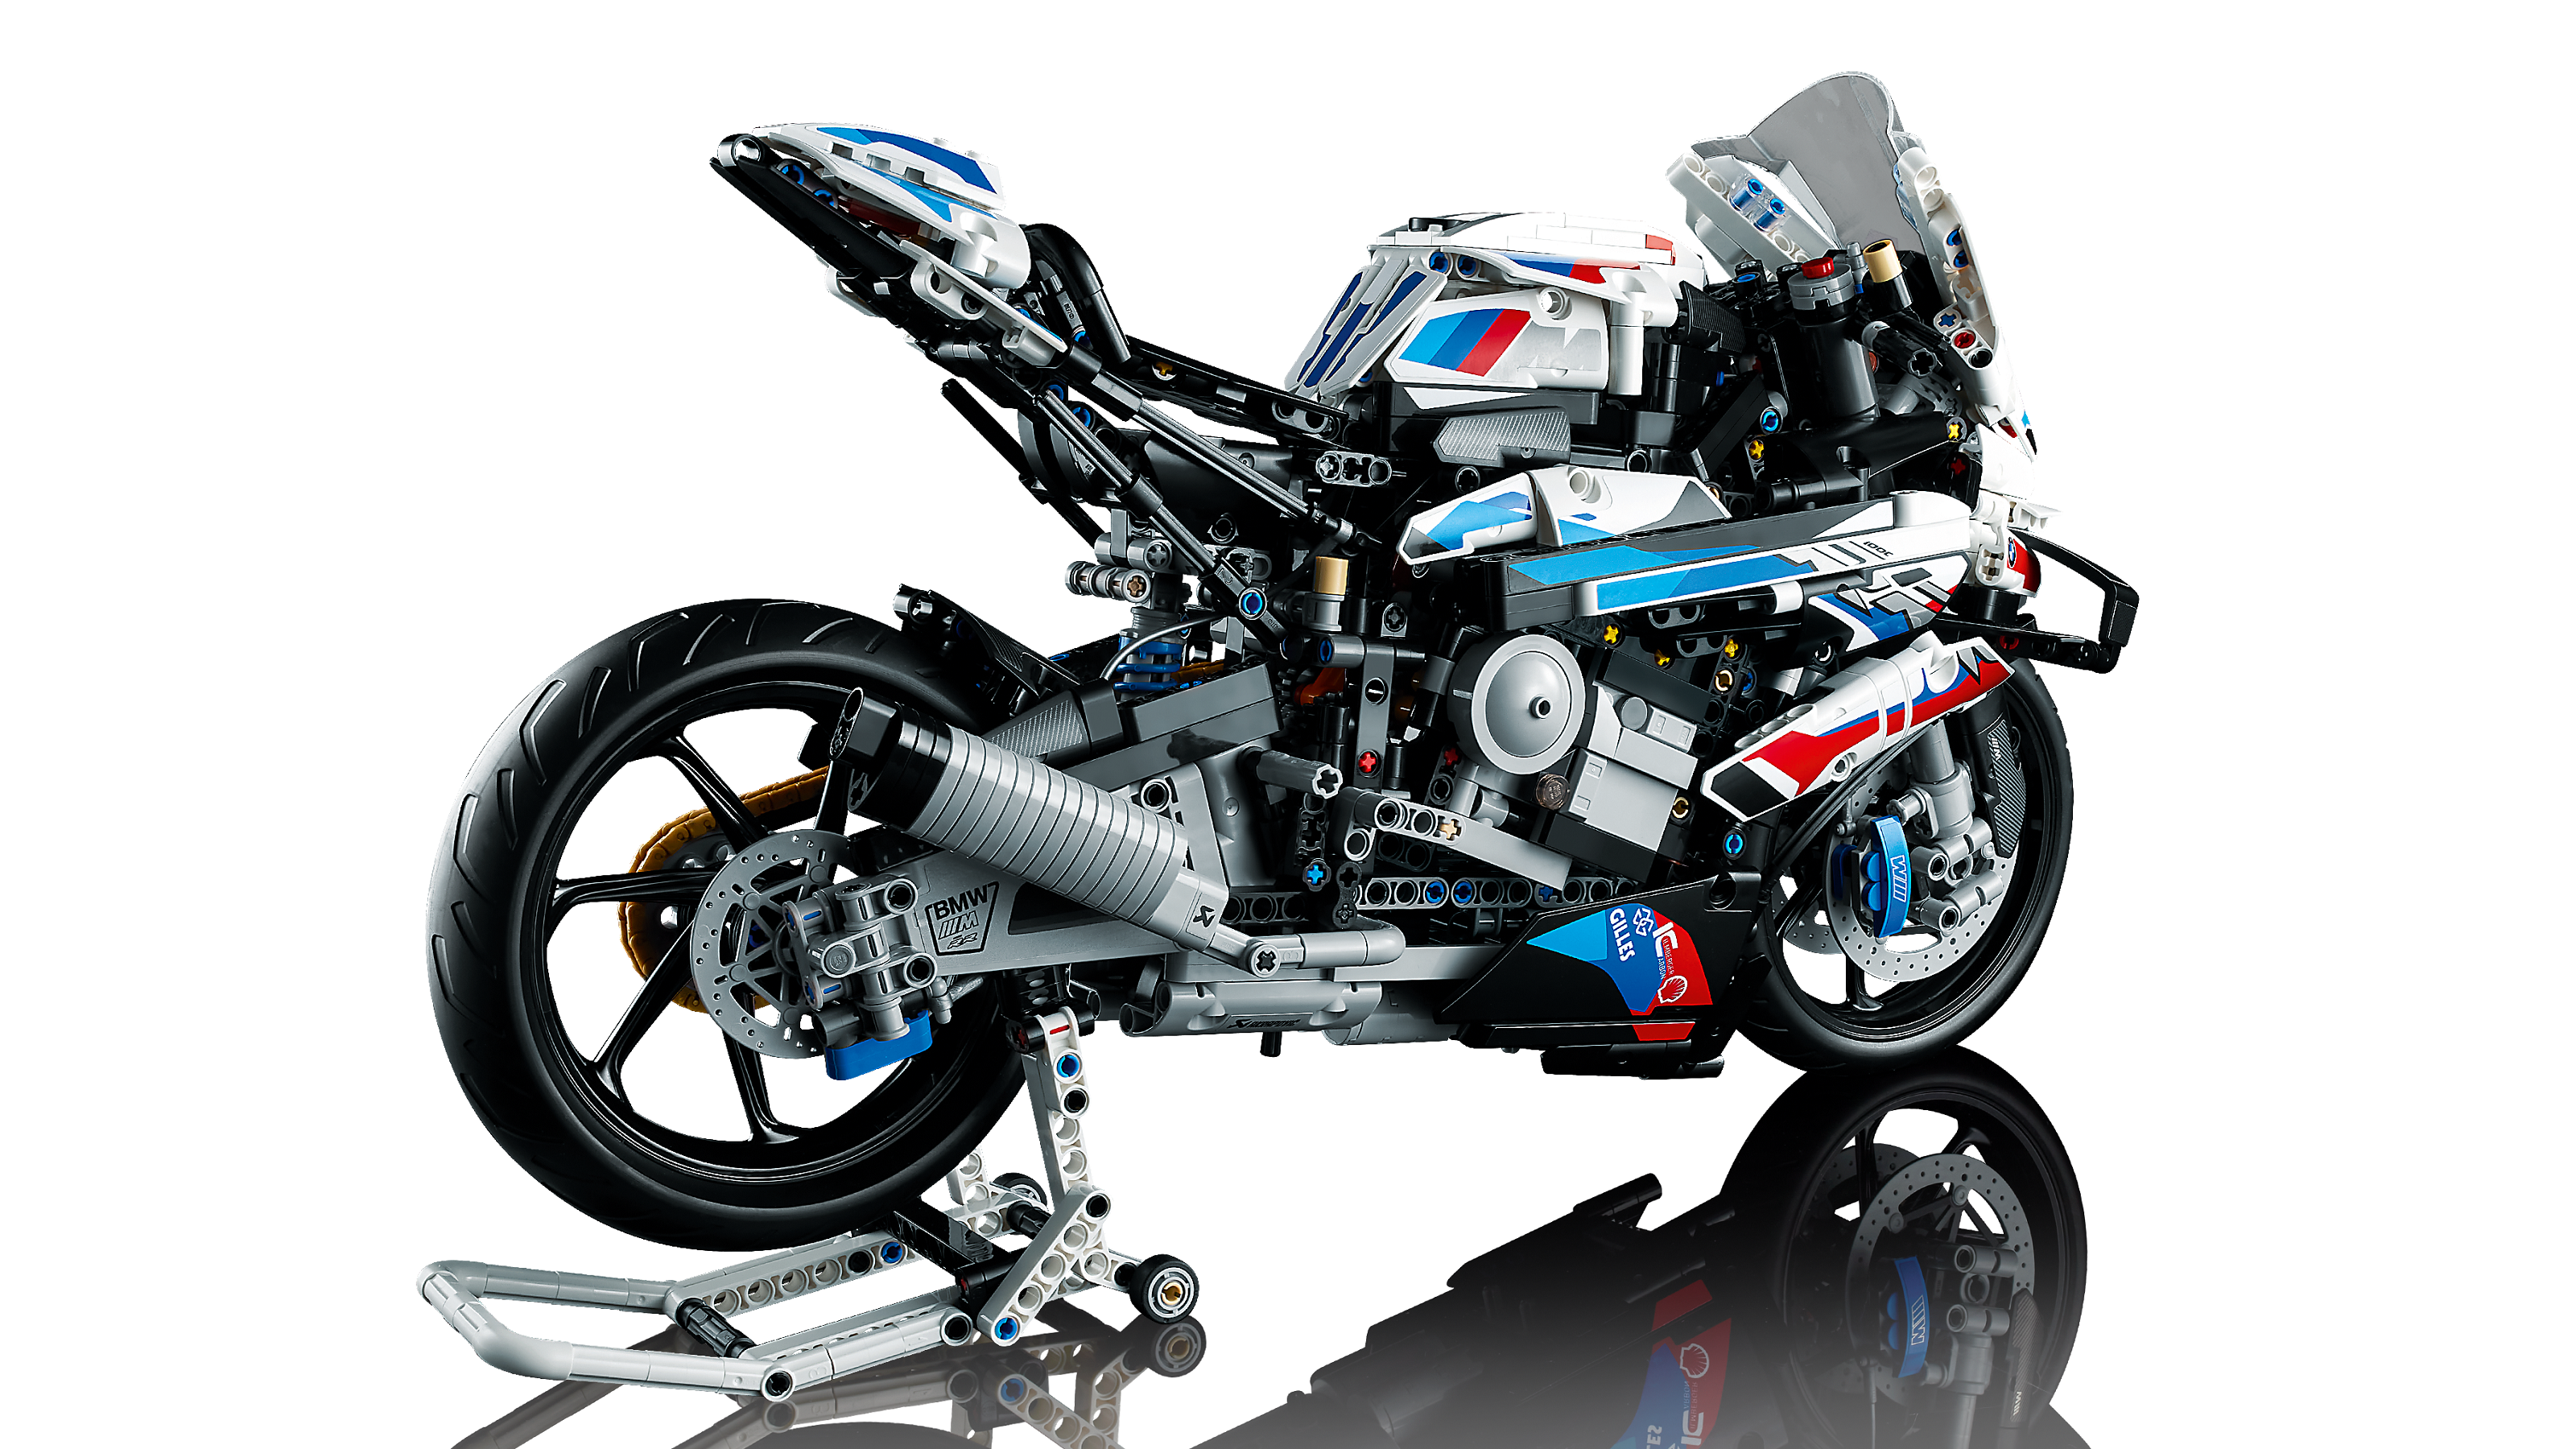 【半額】 レゴ　42130 BMWバイクM1000RR 模型/プラモデル